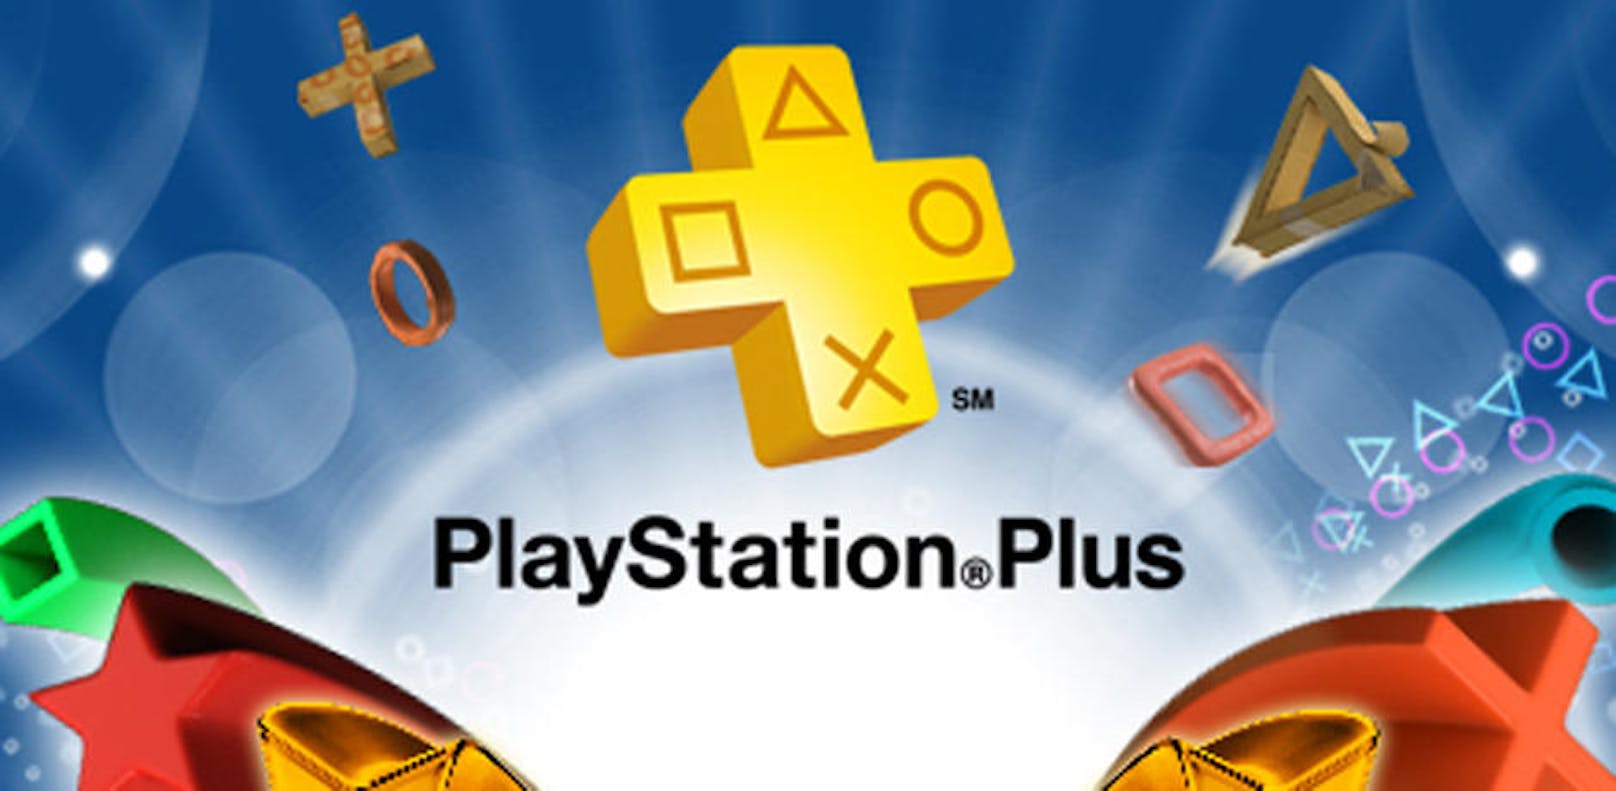 <b>28. Juni 2018:</b> Sony gibt allen Spielern, einschließlich aktueller PlayStation Plus-Mitglieder, 25 % Rabatt auf den Kauf einer PlayStation Plus-Mitgliedschaft für 3 Monate. Das Angebot ist bis Montag, 9. Juli, 11 Uhr im PlayStation Store erhältlich. Aktive PSP-Mitglieder können bis 11. Juli Call of Duty: Black Ops III für PS4 herunterladen. Ab 3. Juli gibt es zudem folgende neue PlayStation Plus-Titel zum Download: Absolver (PS4), Heavy Rain (PS4), Rayman HD (PS3), Extreme Exorcism (PS3), Space Overlords (PS Vita + PS4) und Zero Escape: Zero Time Dilemma (PS Vita).